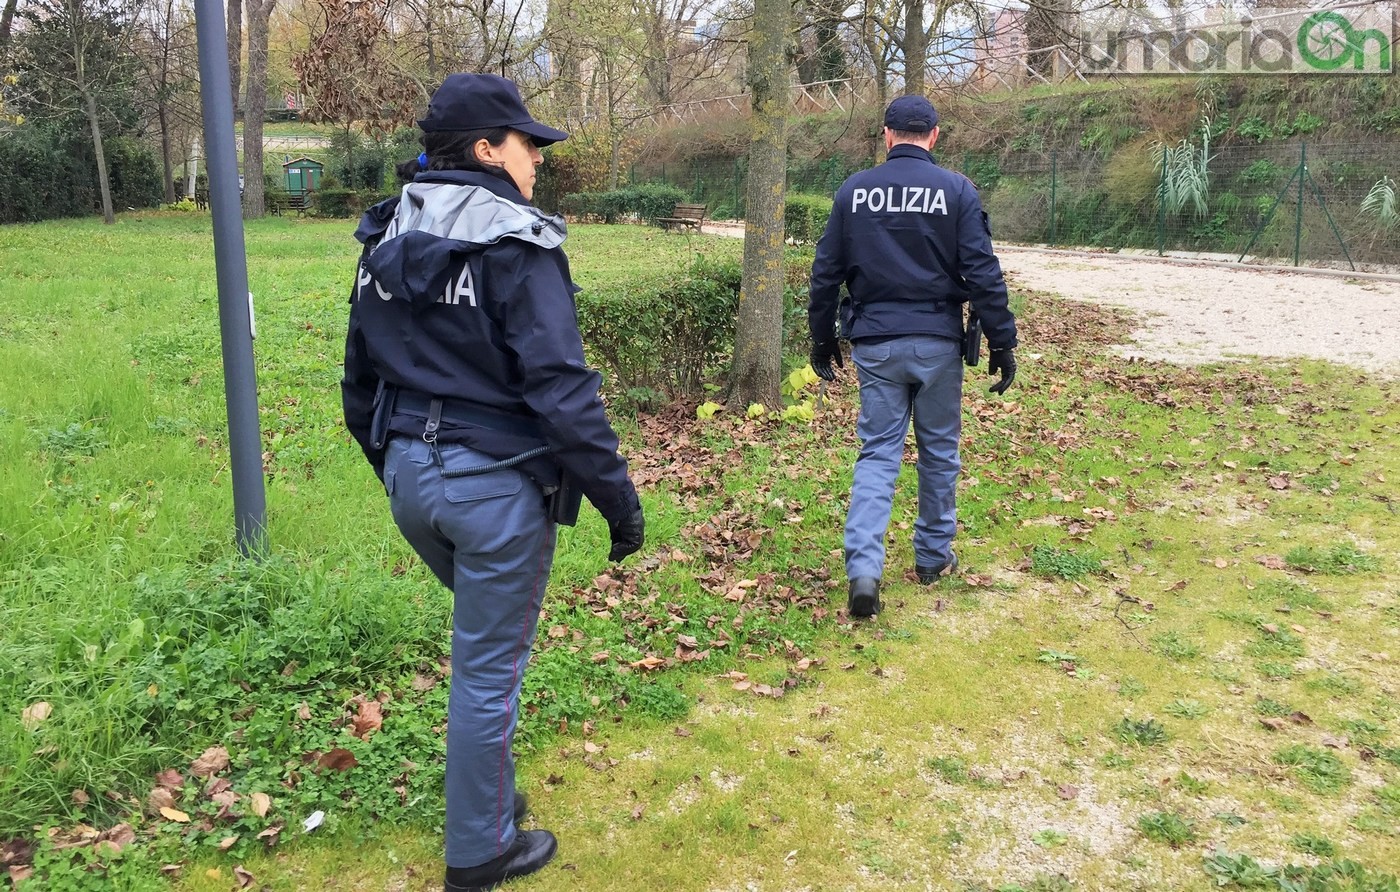 Parco fluviale urbano San Martino, polizia Volante. Controlli droga degrado - 2 dicembre 2016 (20)